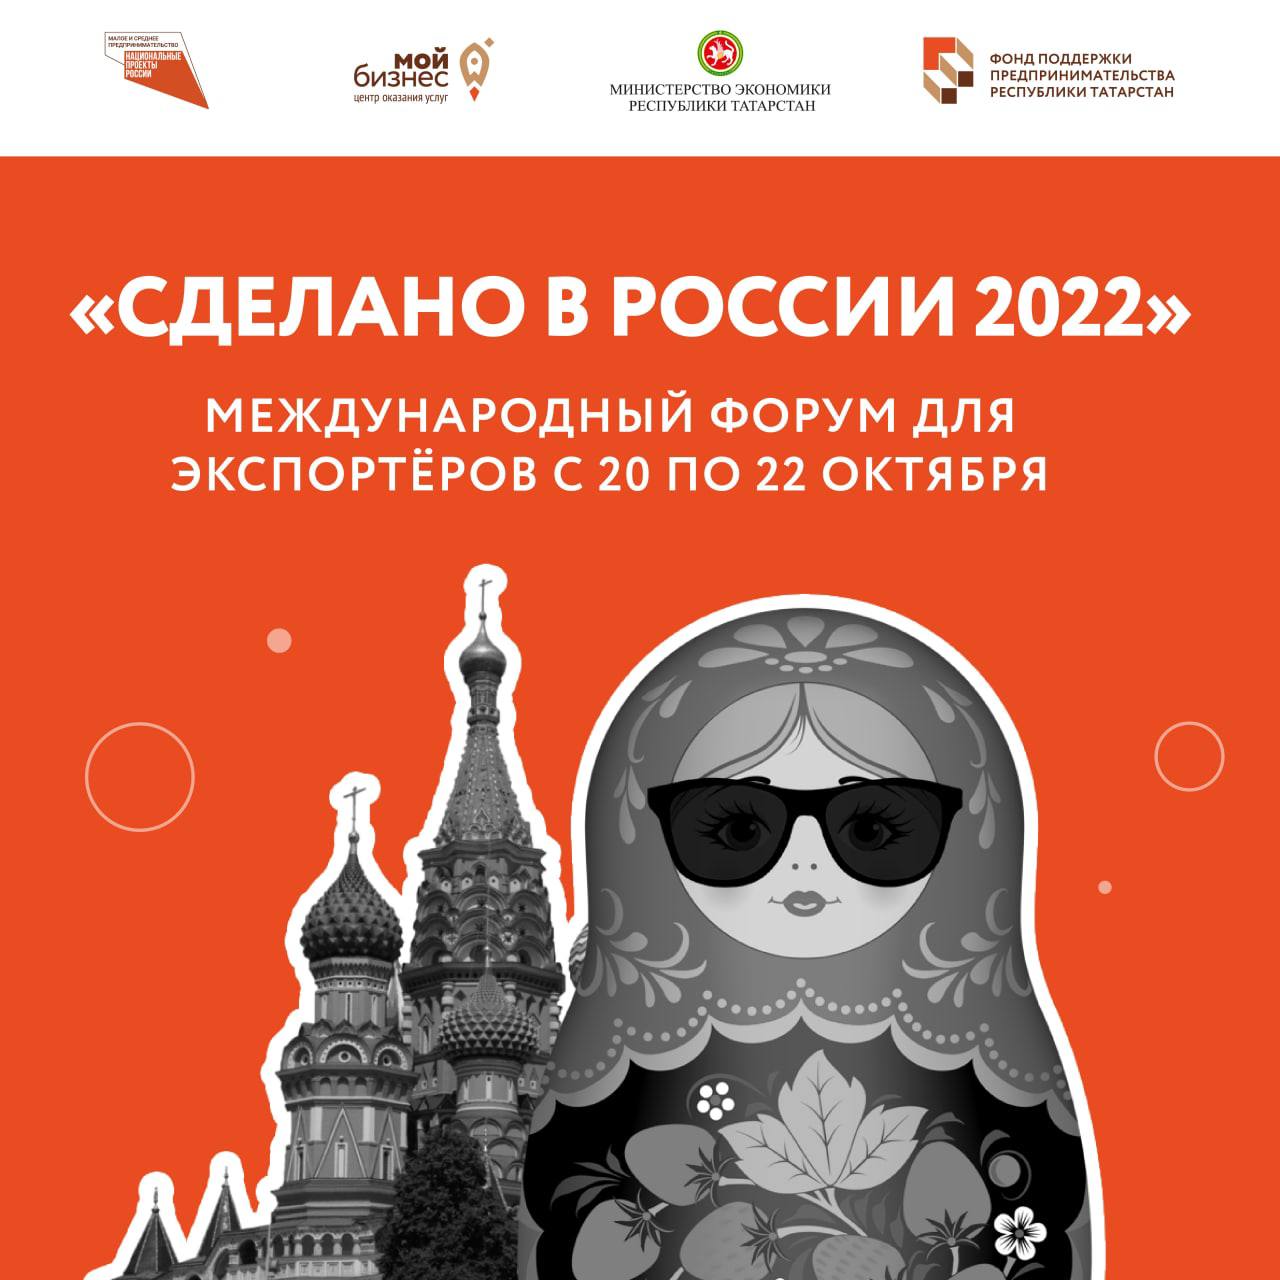 Международный форум для экспортёров «Сделано в России 2022»